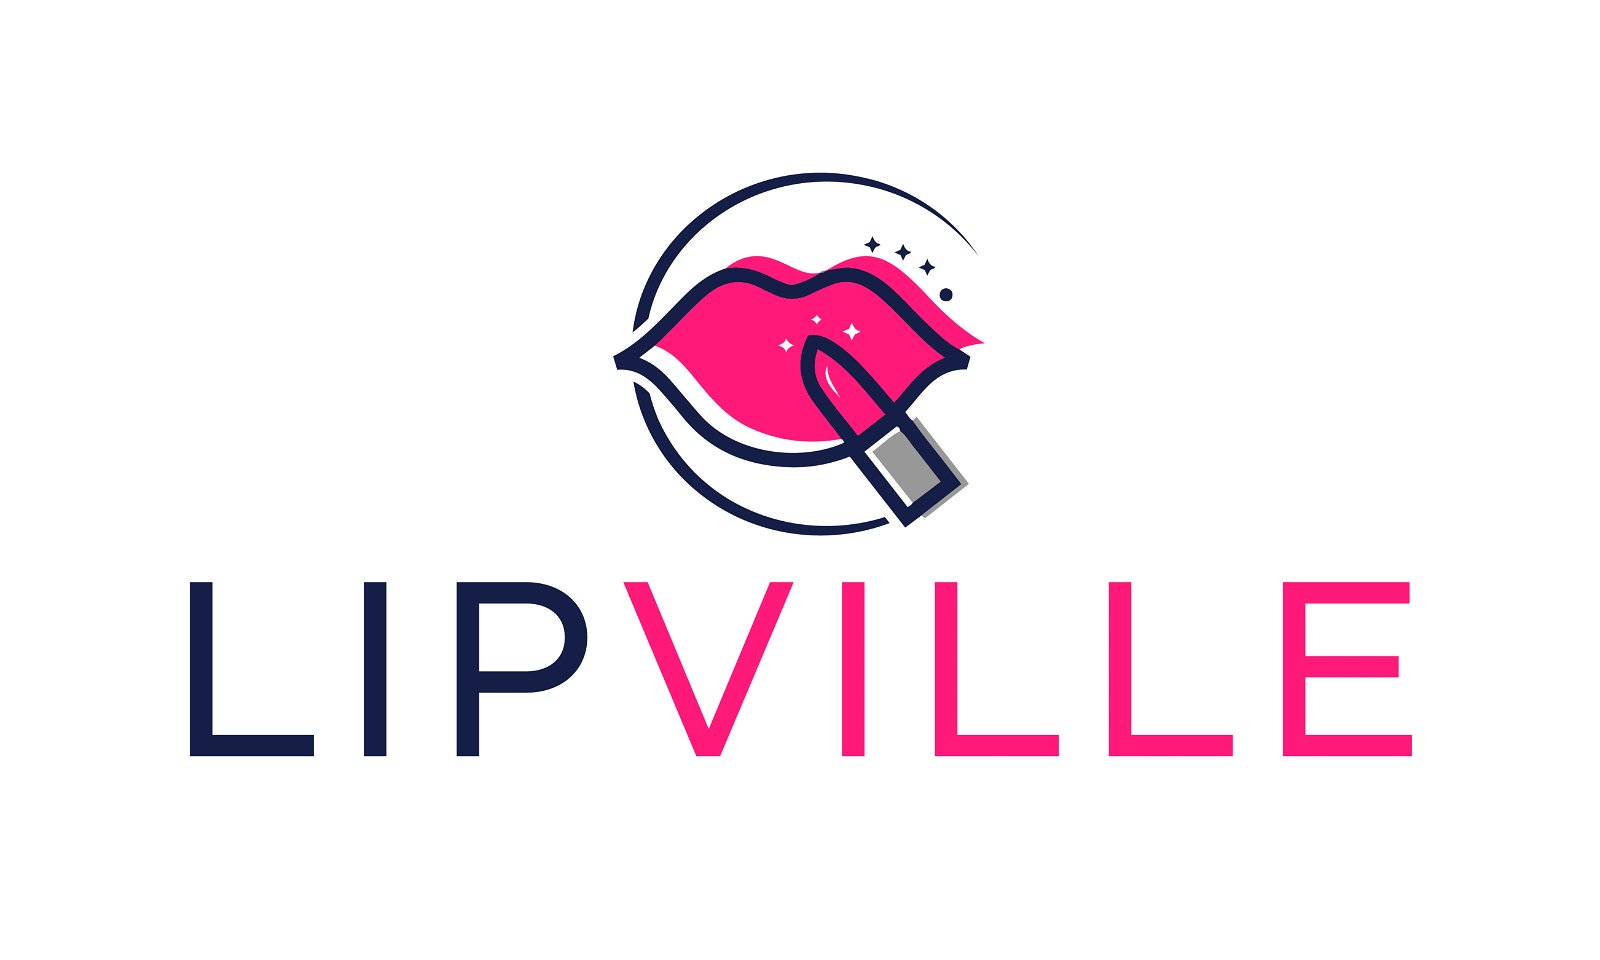 Lipville.com - Creative brandable domain for sale